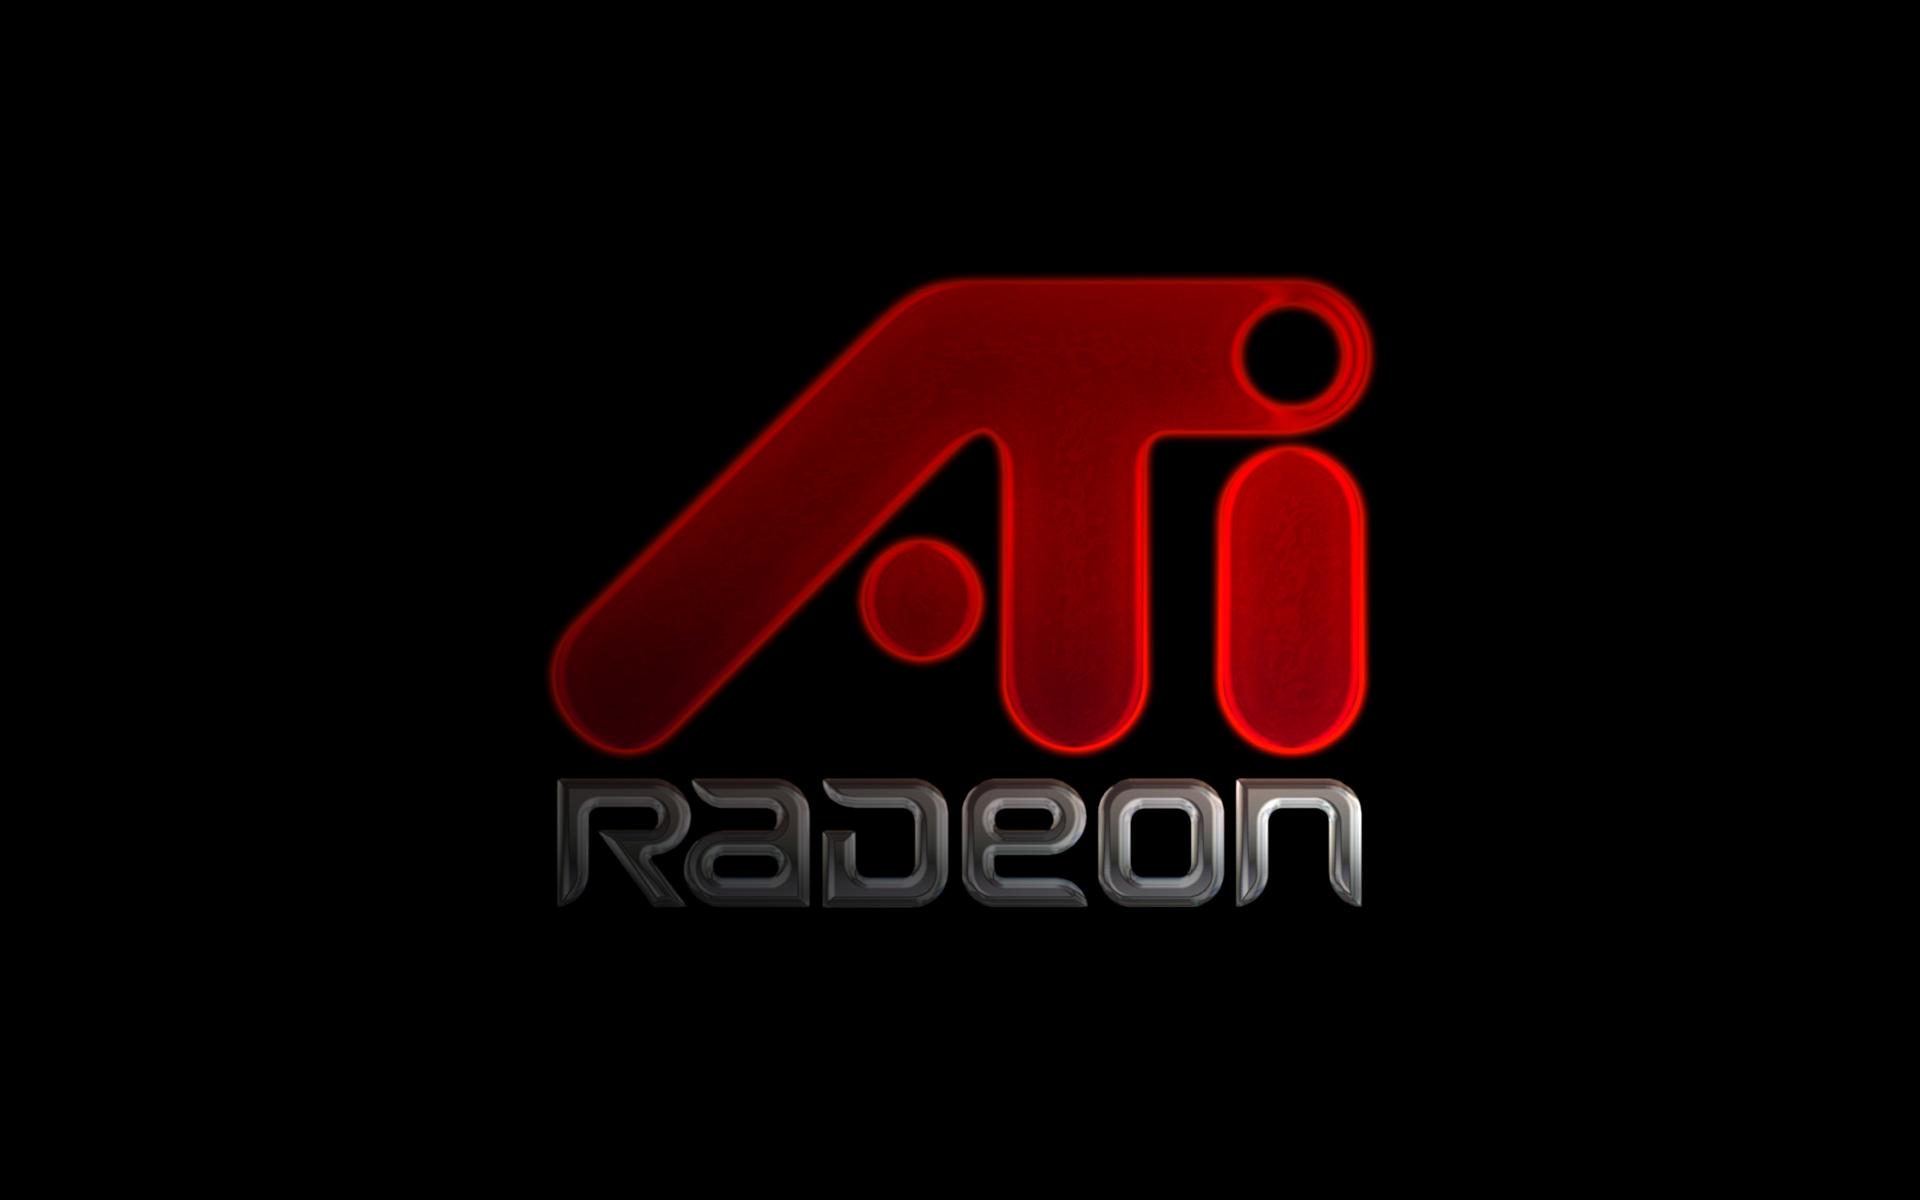 Ati Radeon Logos Hq Wide